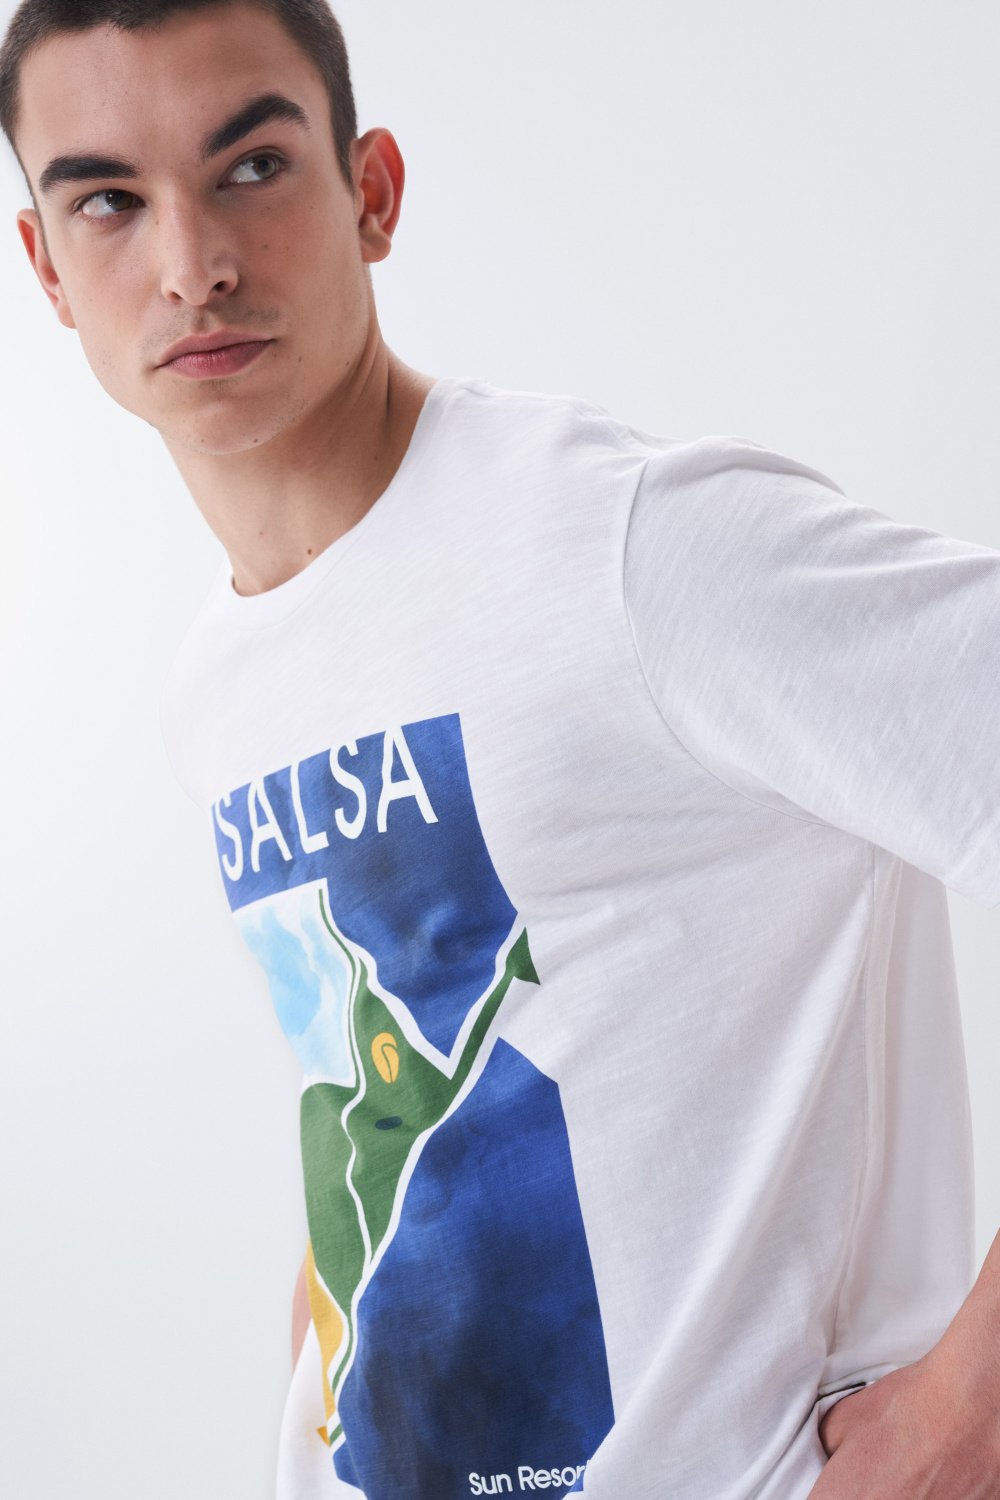 T-shirt graphique gomtrique - Salsa